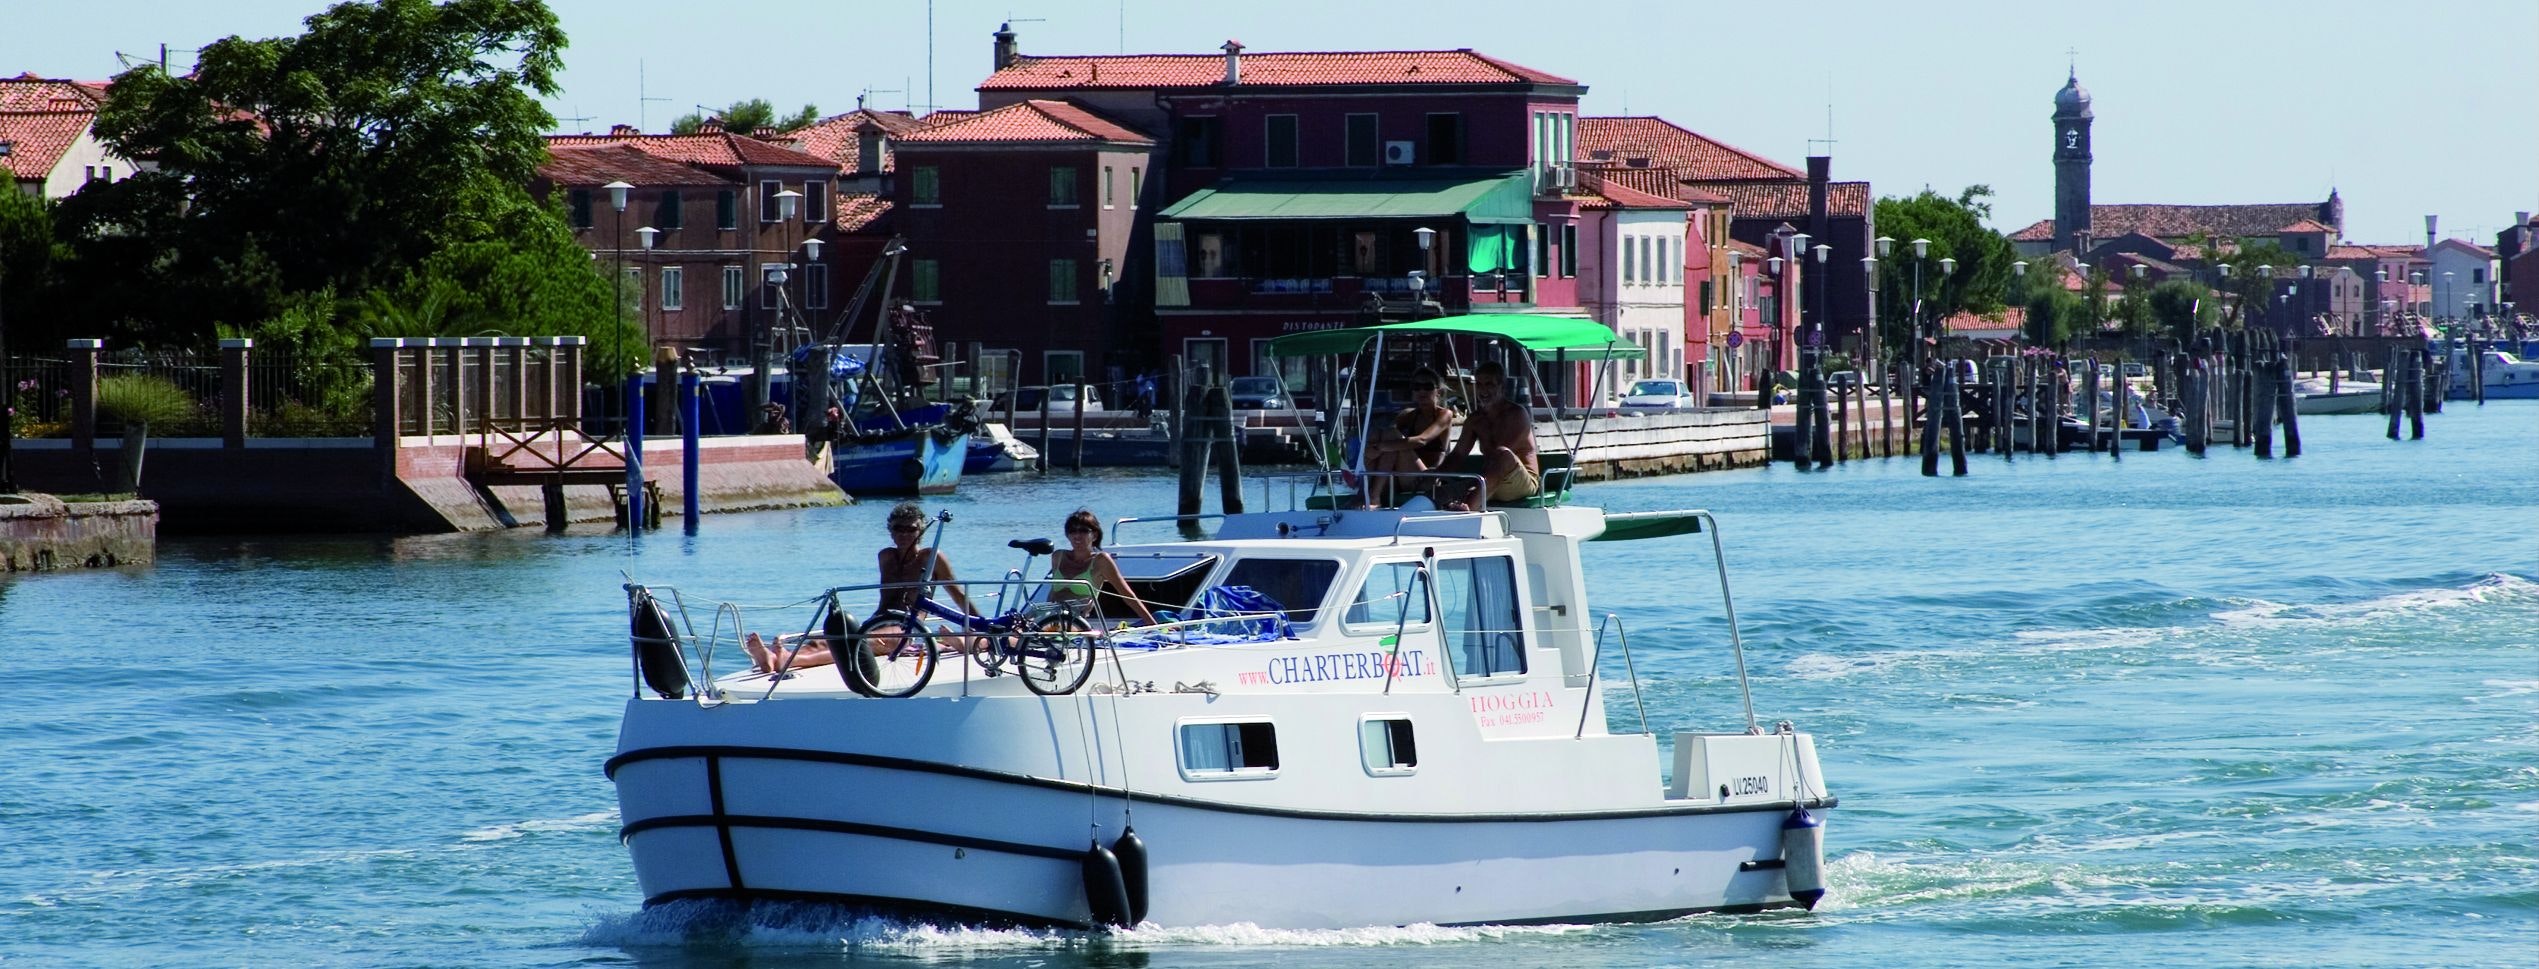 Persone a bordo di una casa galleggiante nella Laguna di Venezia